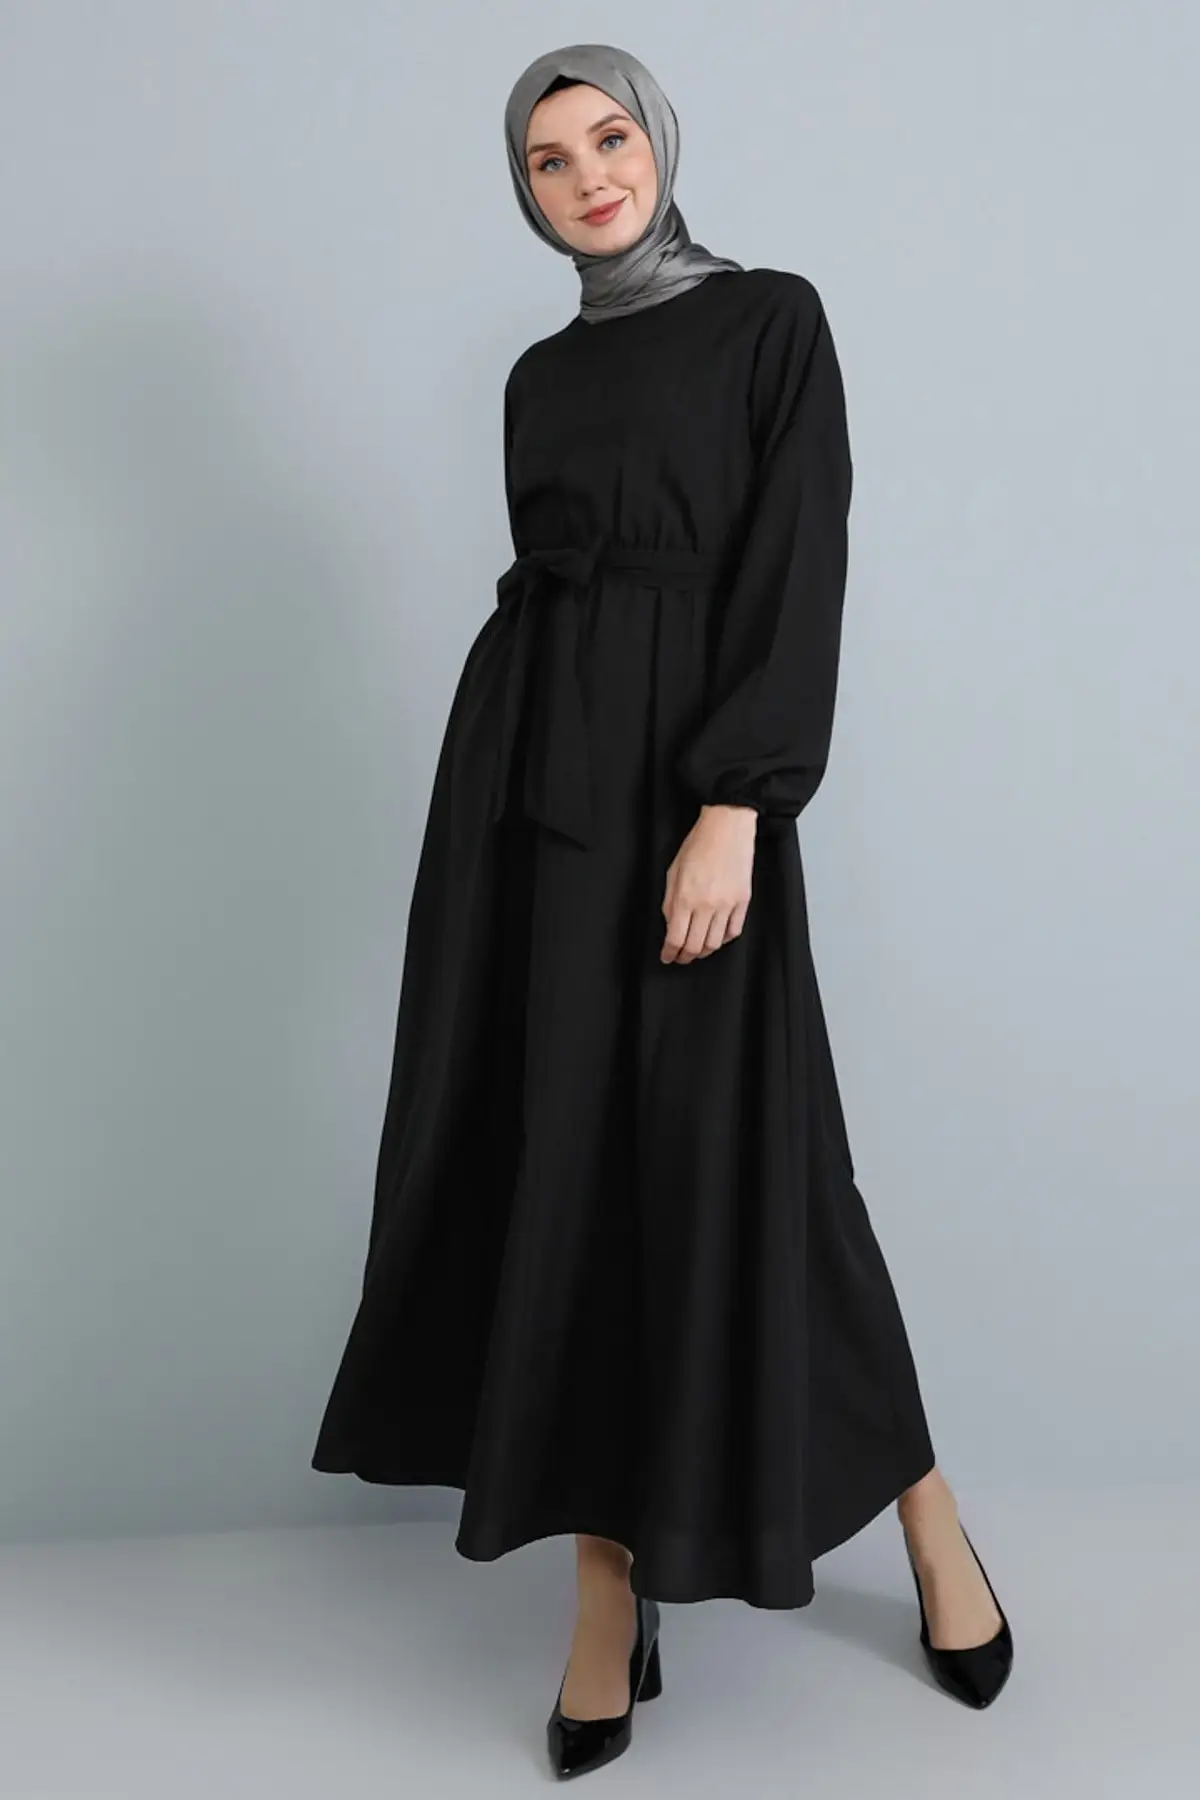 Kvinder med Lange Ærmer Kjole elastisk talje Mønster stor størrelse bomuld Hijab abaya Muslimske Mode 2021 Vinter Sommer Tyrkiet Casual Wear